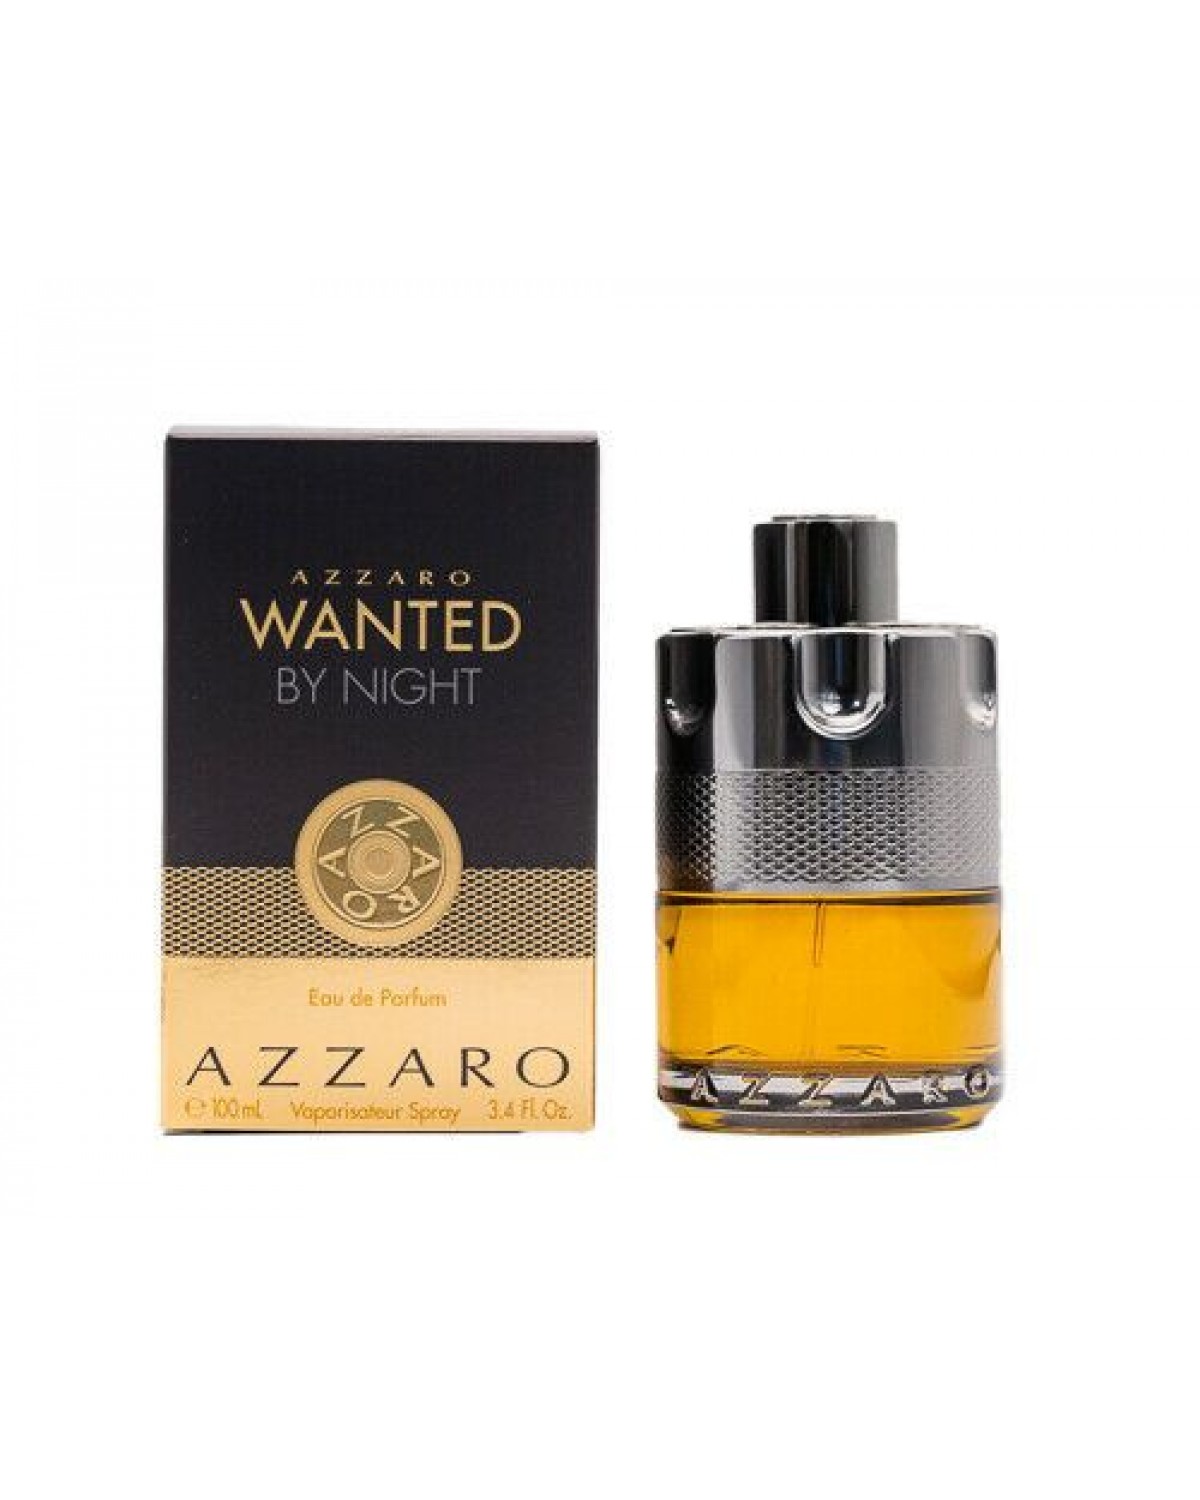 Wanted by Night Azzaro Perfume Masculino - Eau de Parfum - 100ml